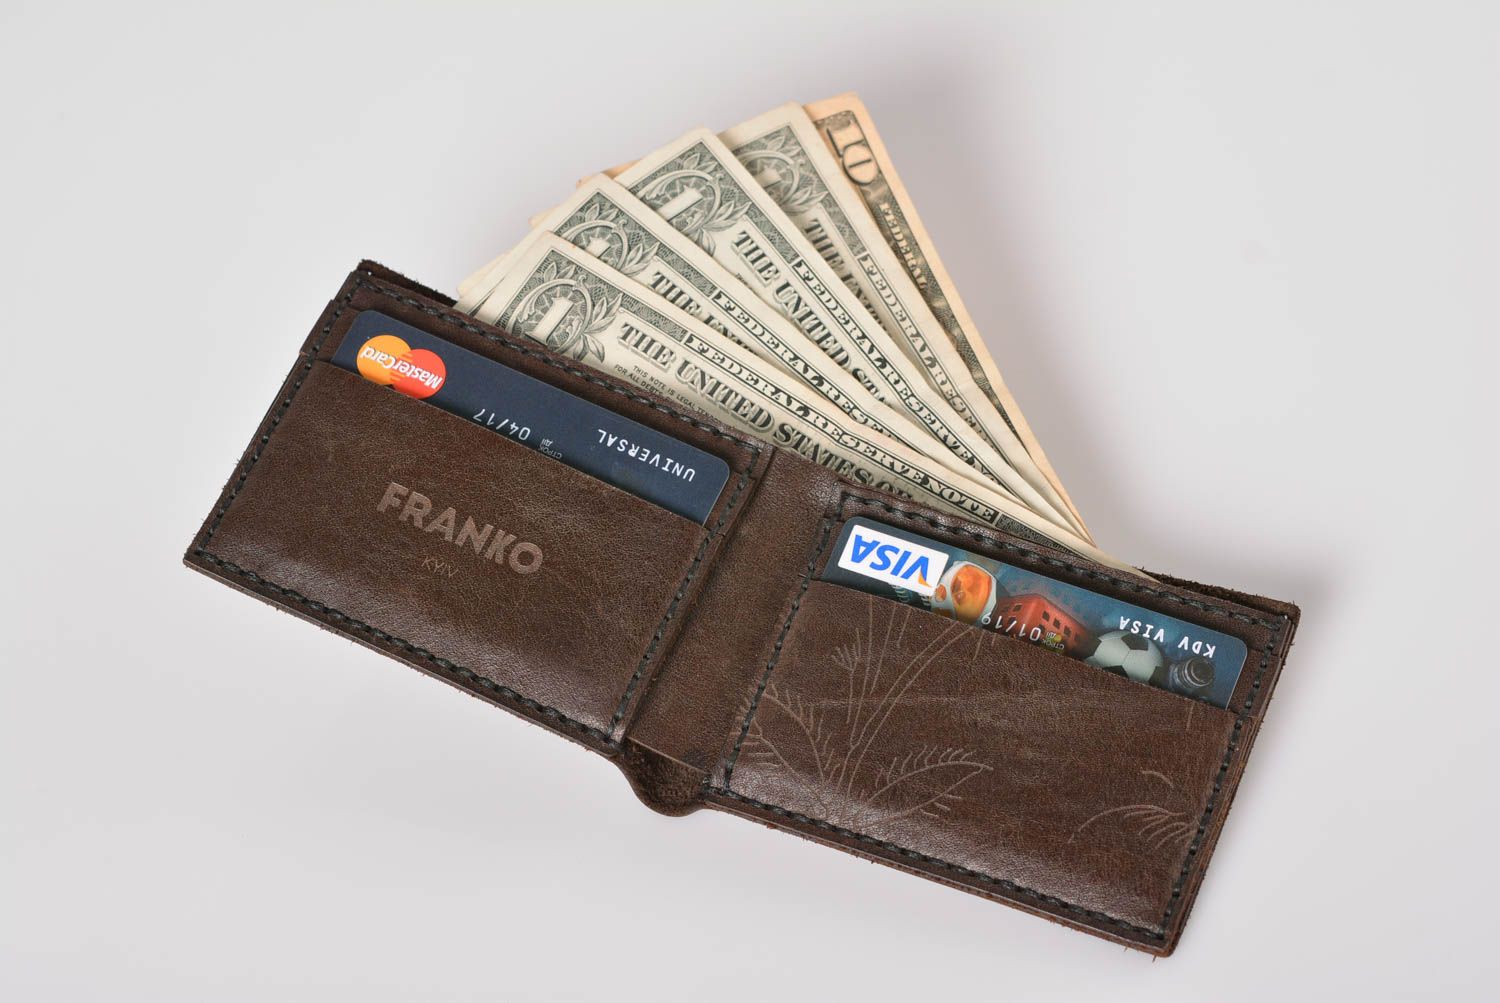 17 Men's wallets ideas  wallet, wallet men, men